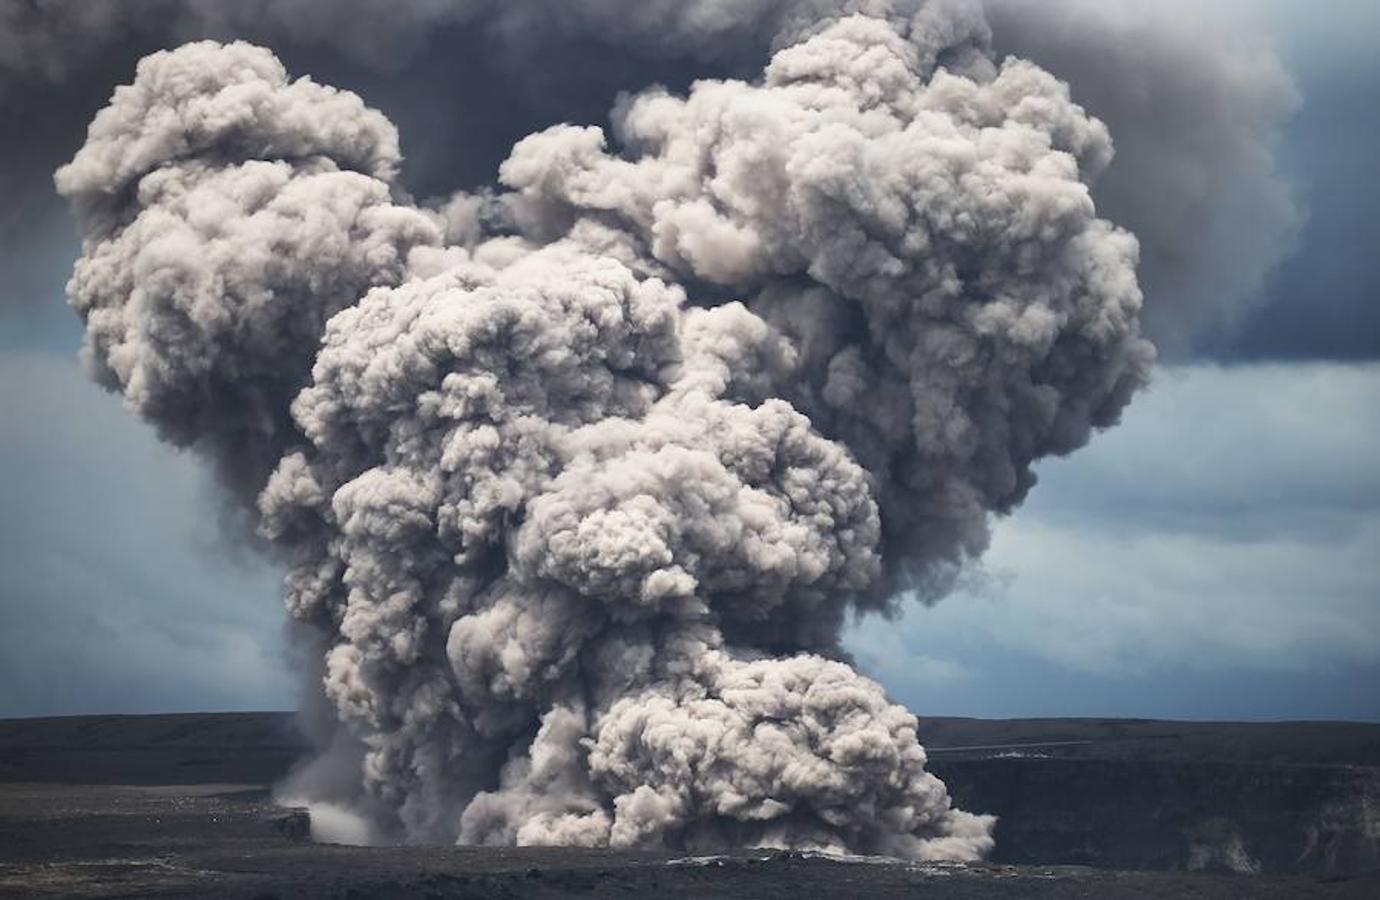 4. El volcán Kilauea, Hawaii.